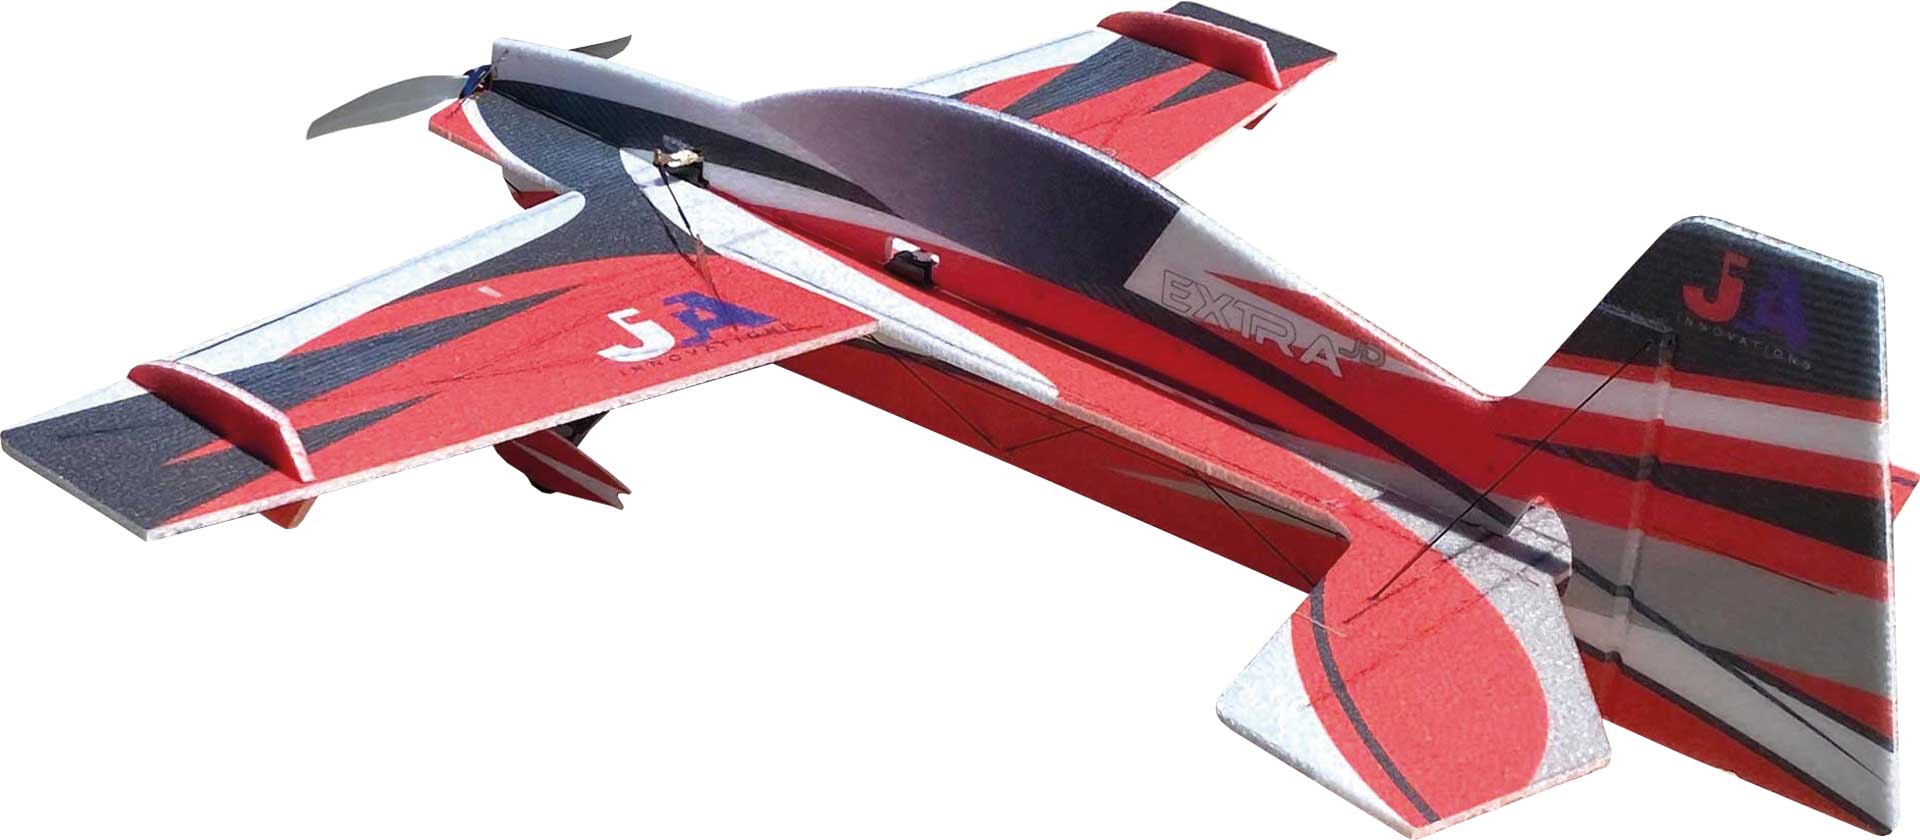 JTA Innovations Extra JD rot/schwarz/weiss 32" EPP 3D-Kunstflug Modell